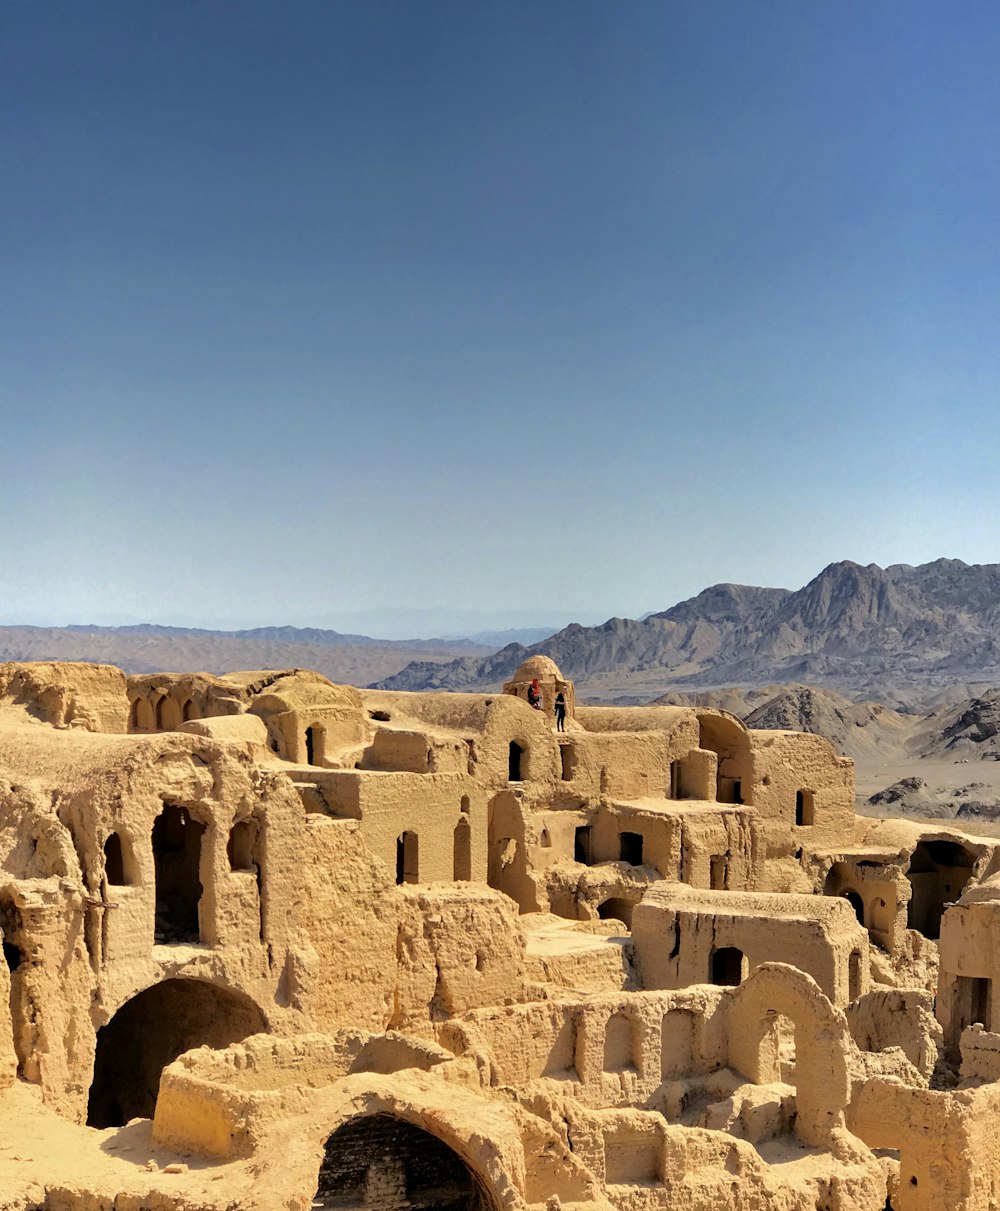 Un groupe de bâtiments dans le désert avec des montagnes en arrière-plan